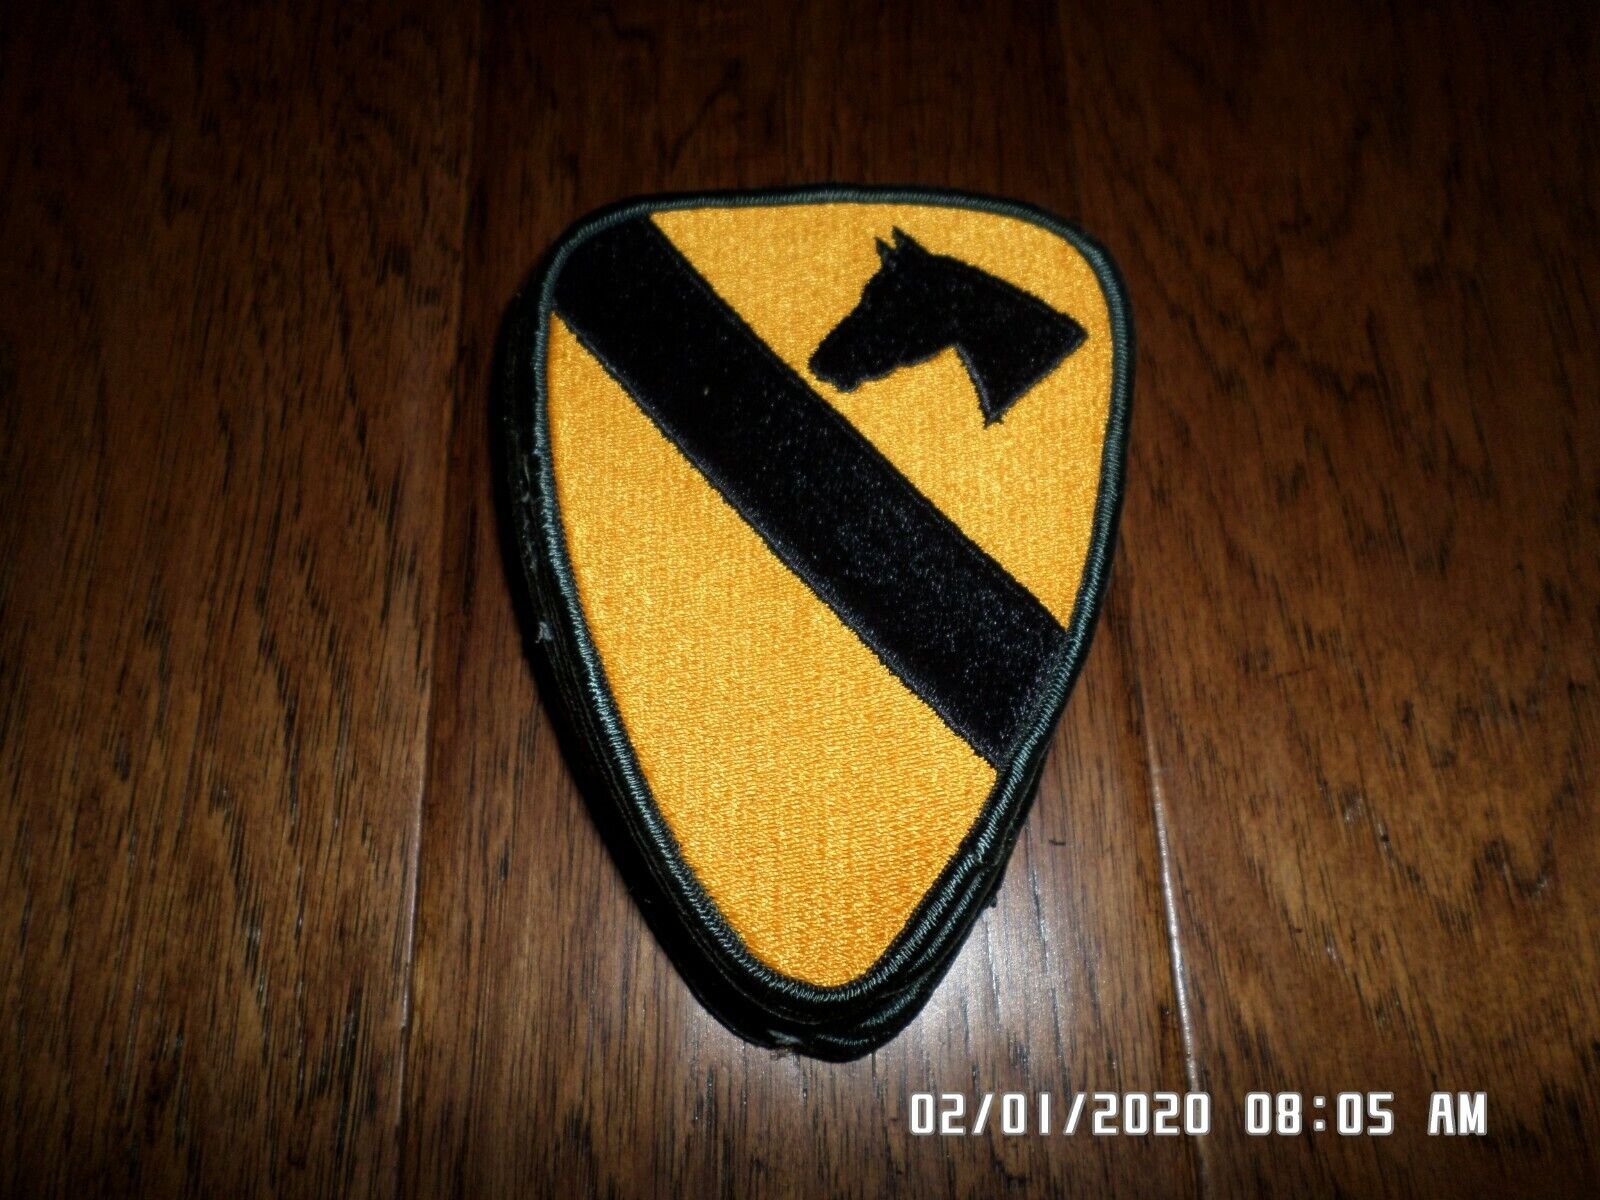 U.S. Army patch